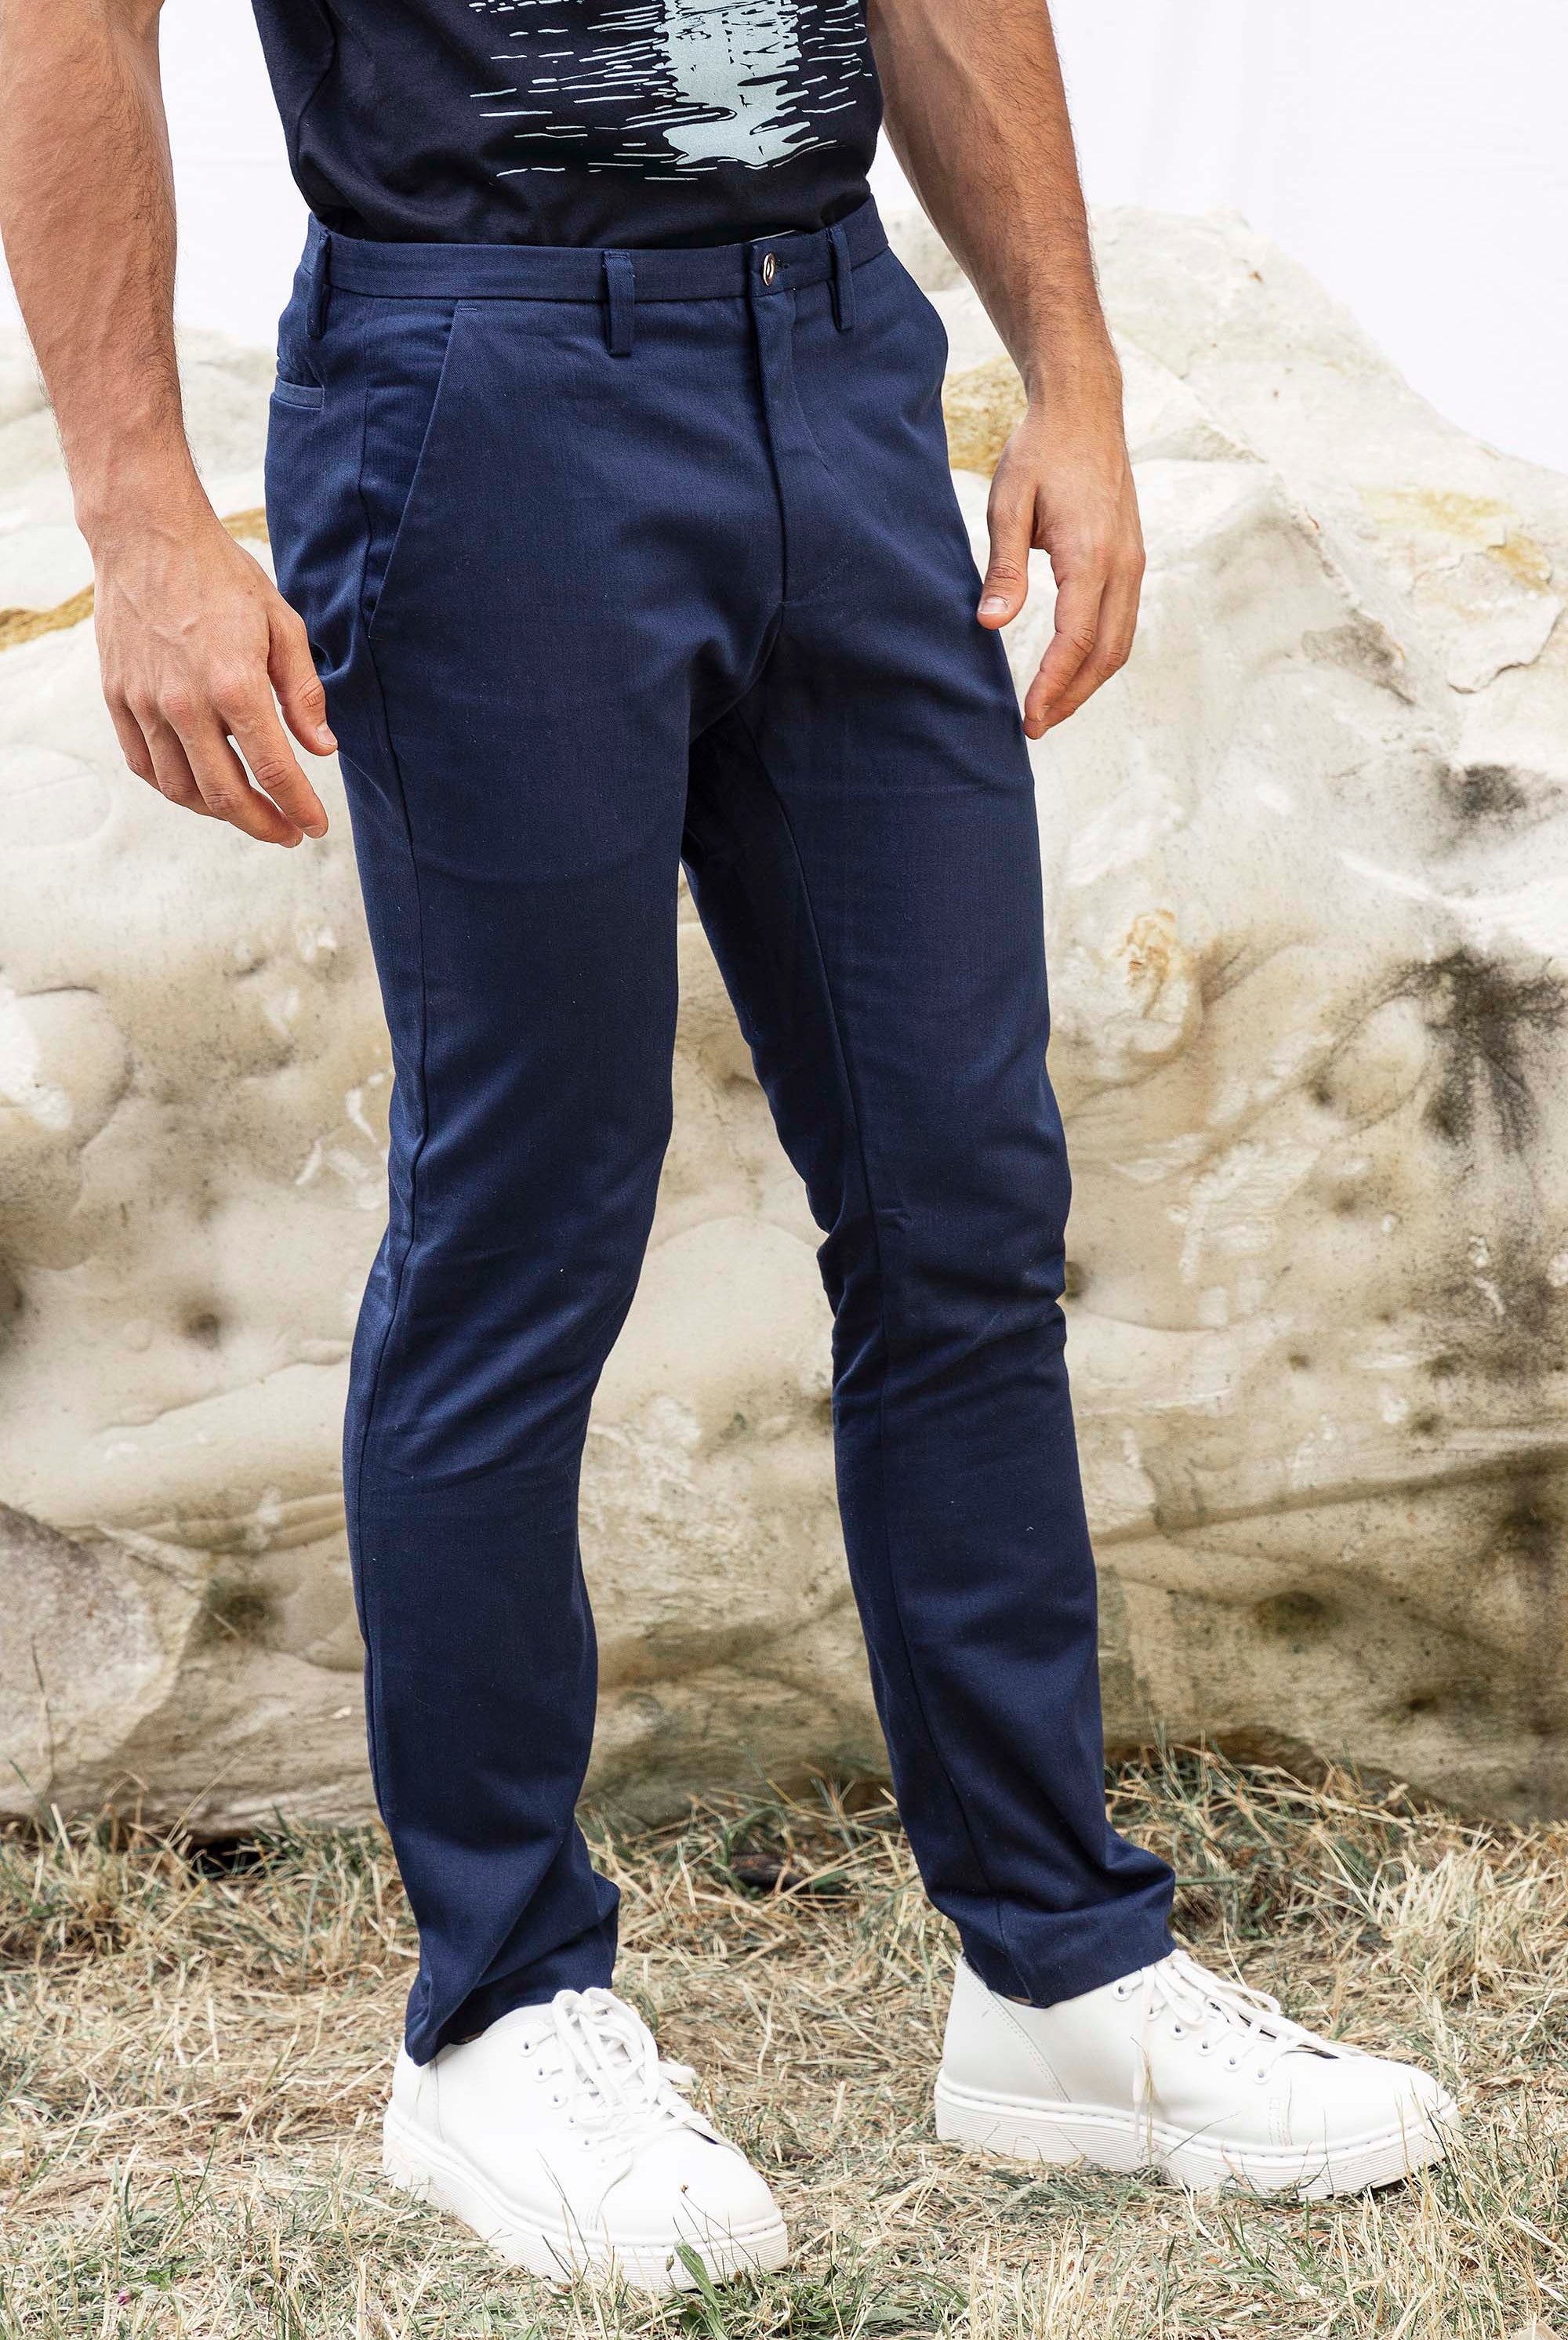 Pantalon Diplomatico Bleu Marine particulièrement confortables et stylés, parfaits à porter au quotidien